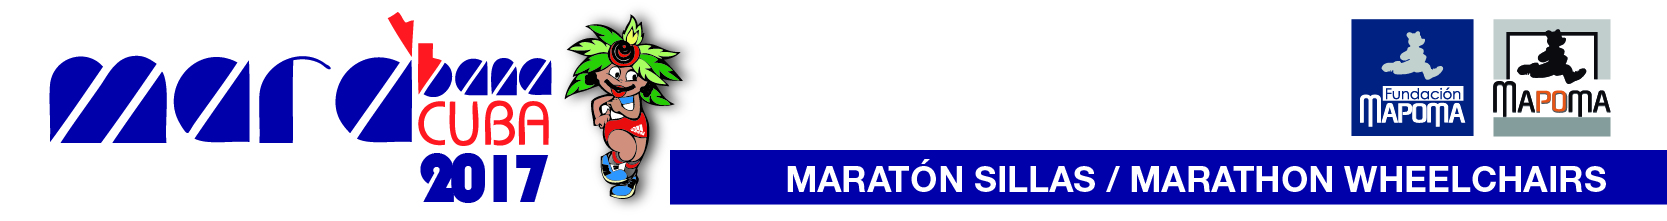 Marabana 2017 - Maratón en Silla de Ruedas